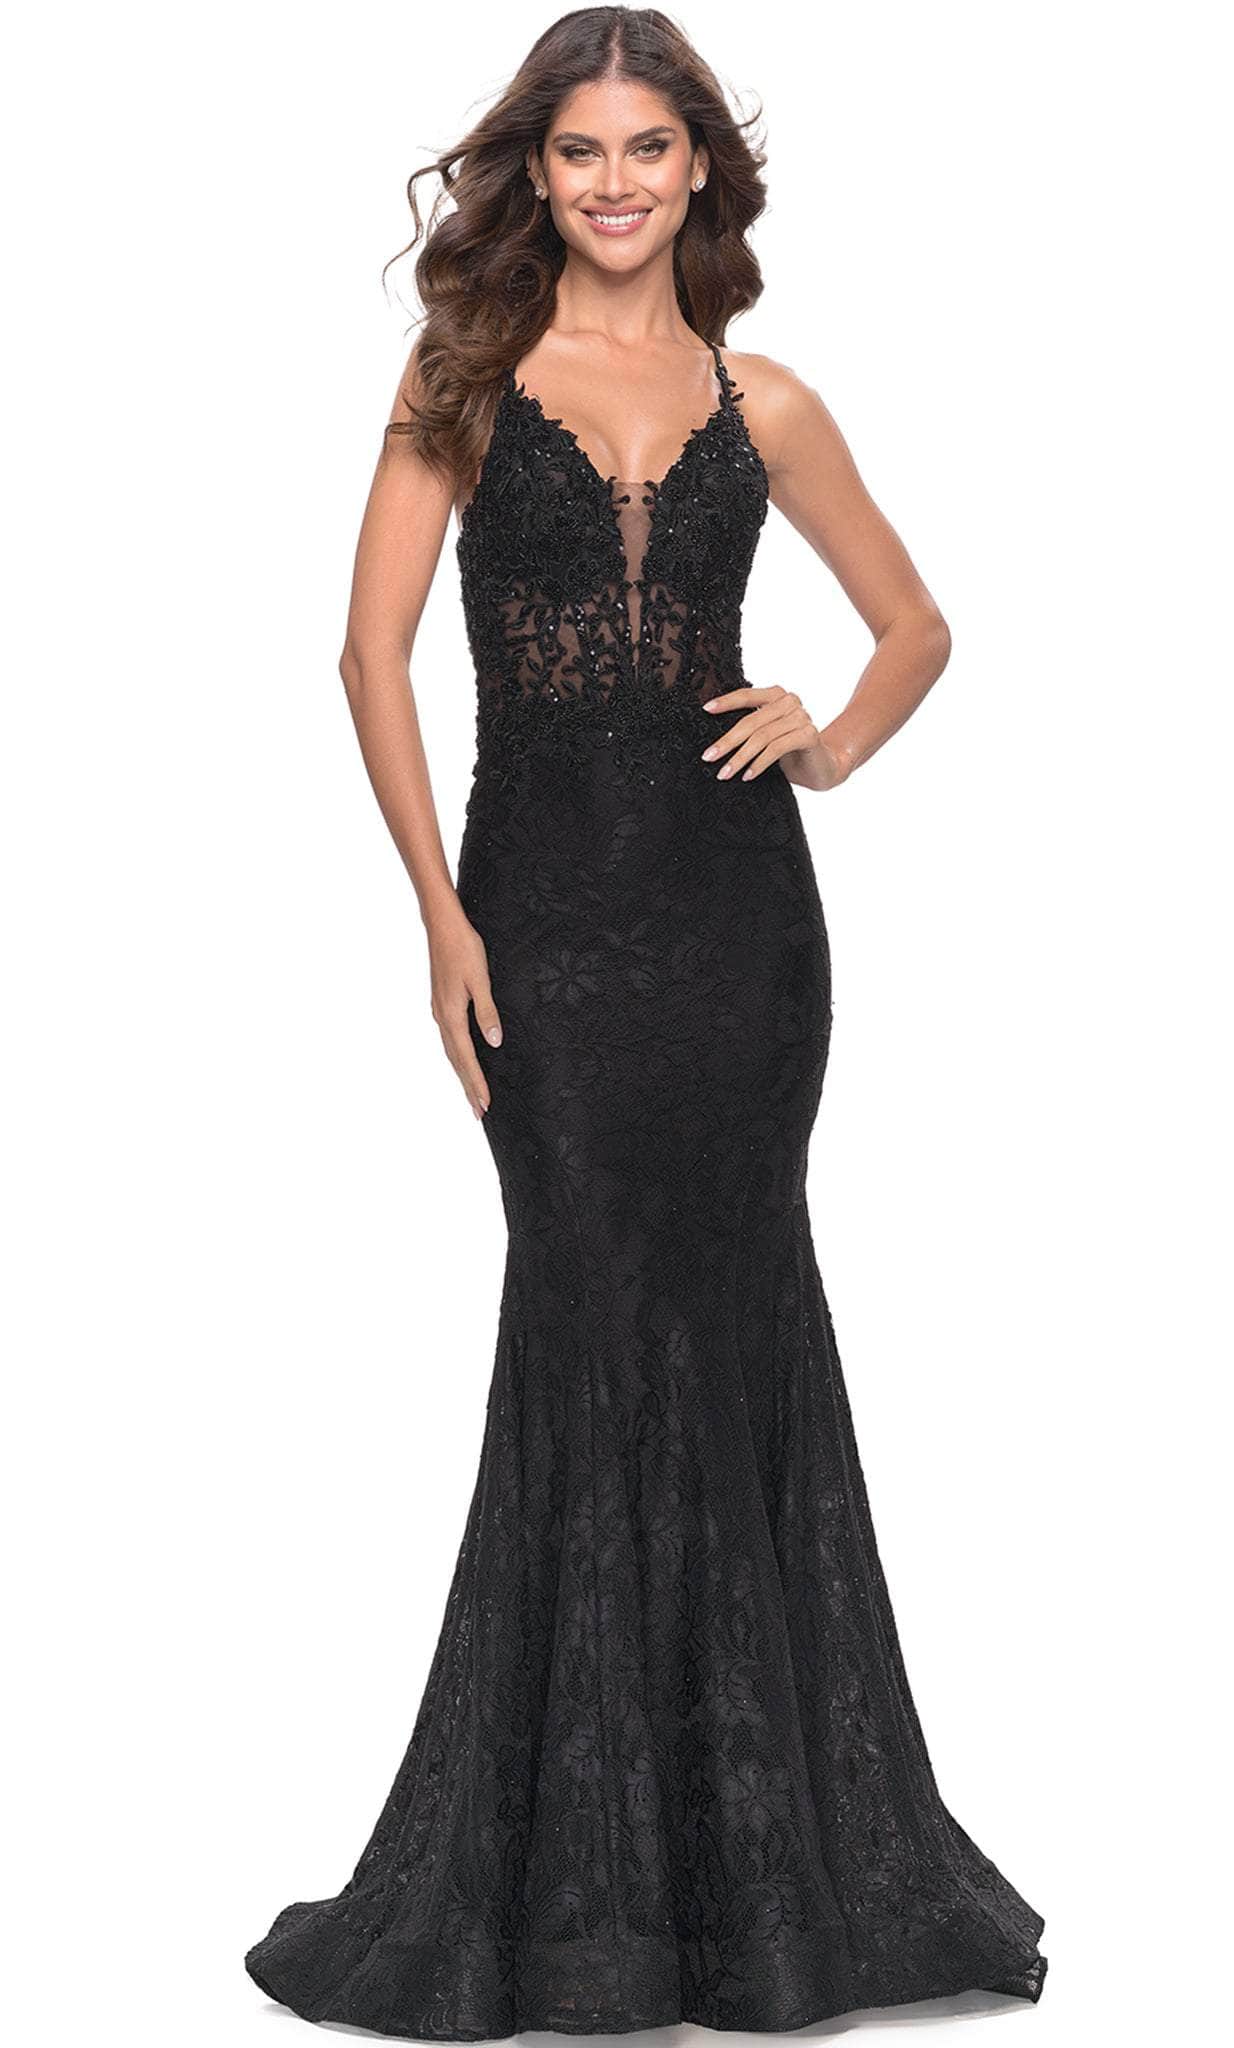 La Femme 31265 - Lace Applique Trumpet Long Prom Dress
